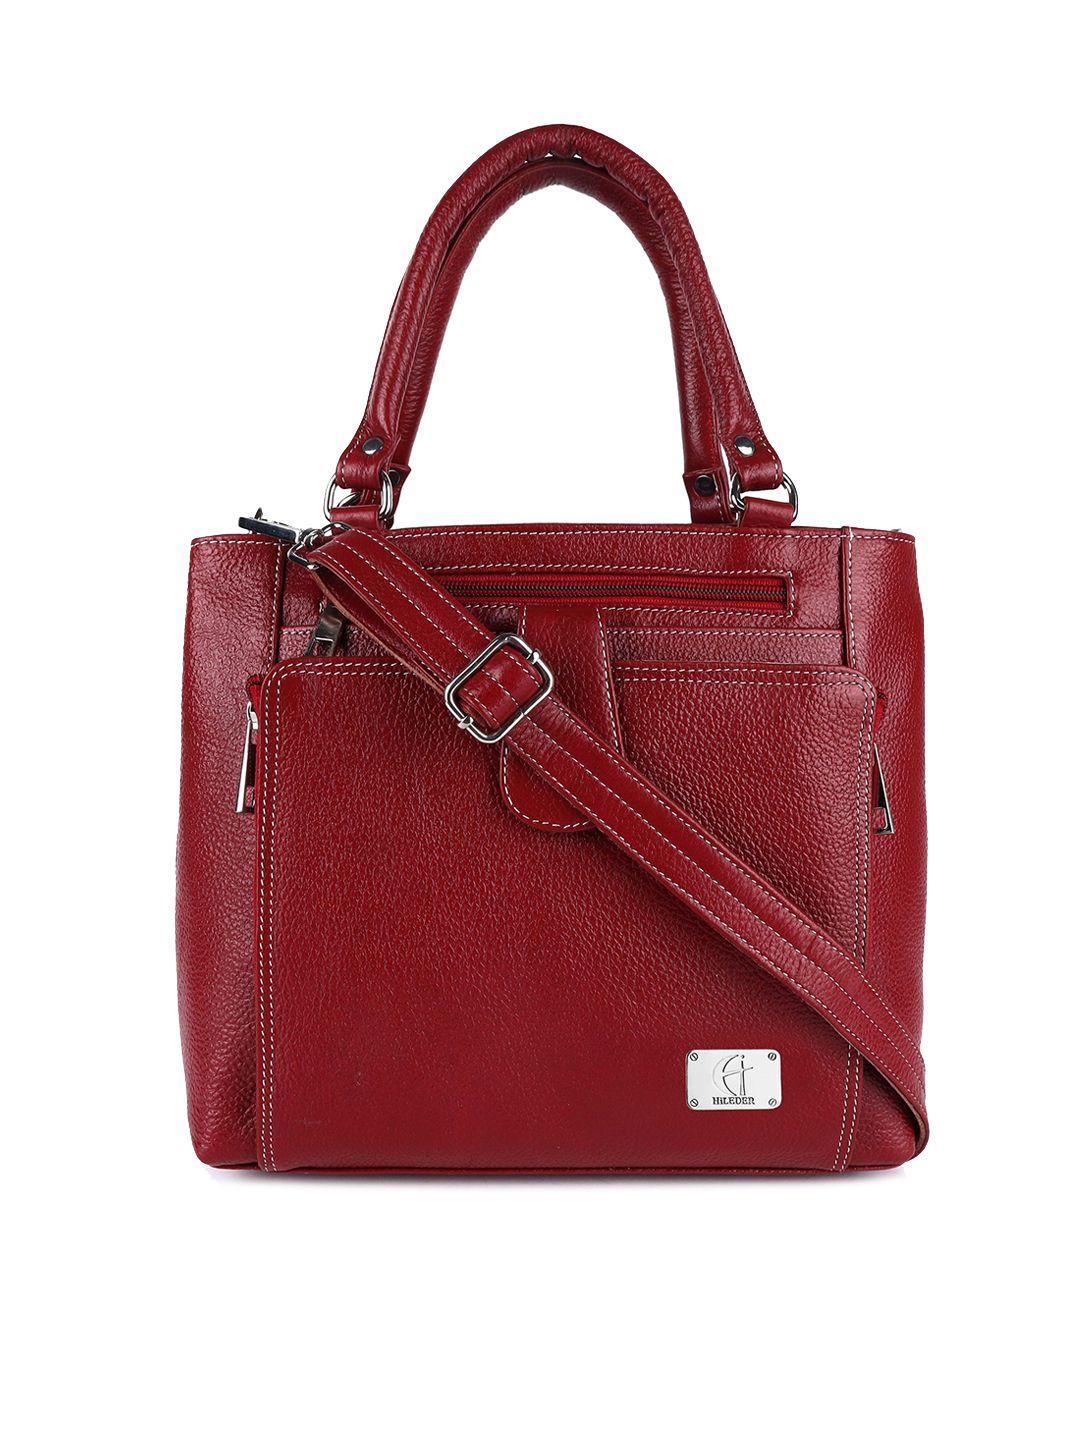 hileder  women maroon leather structured handheld bag